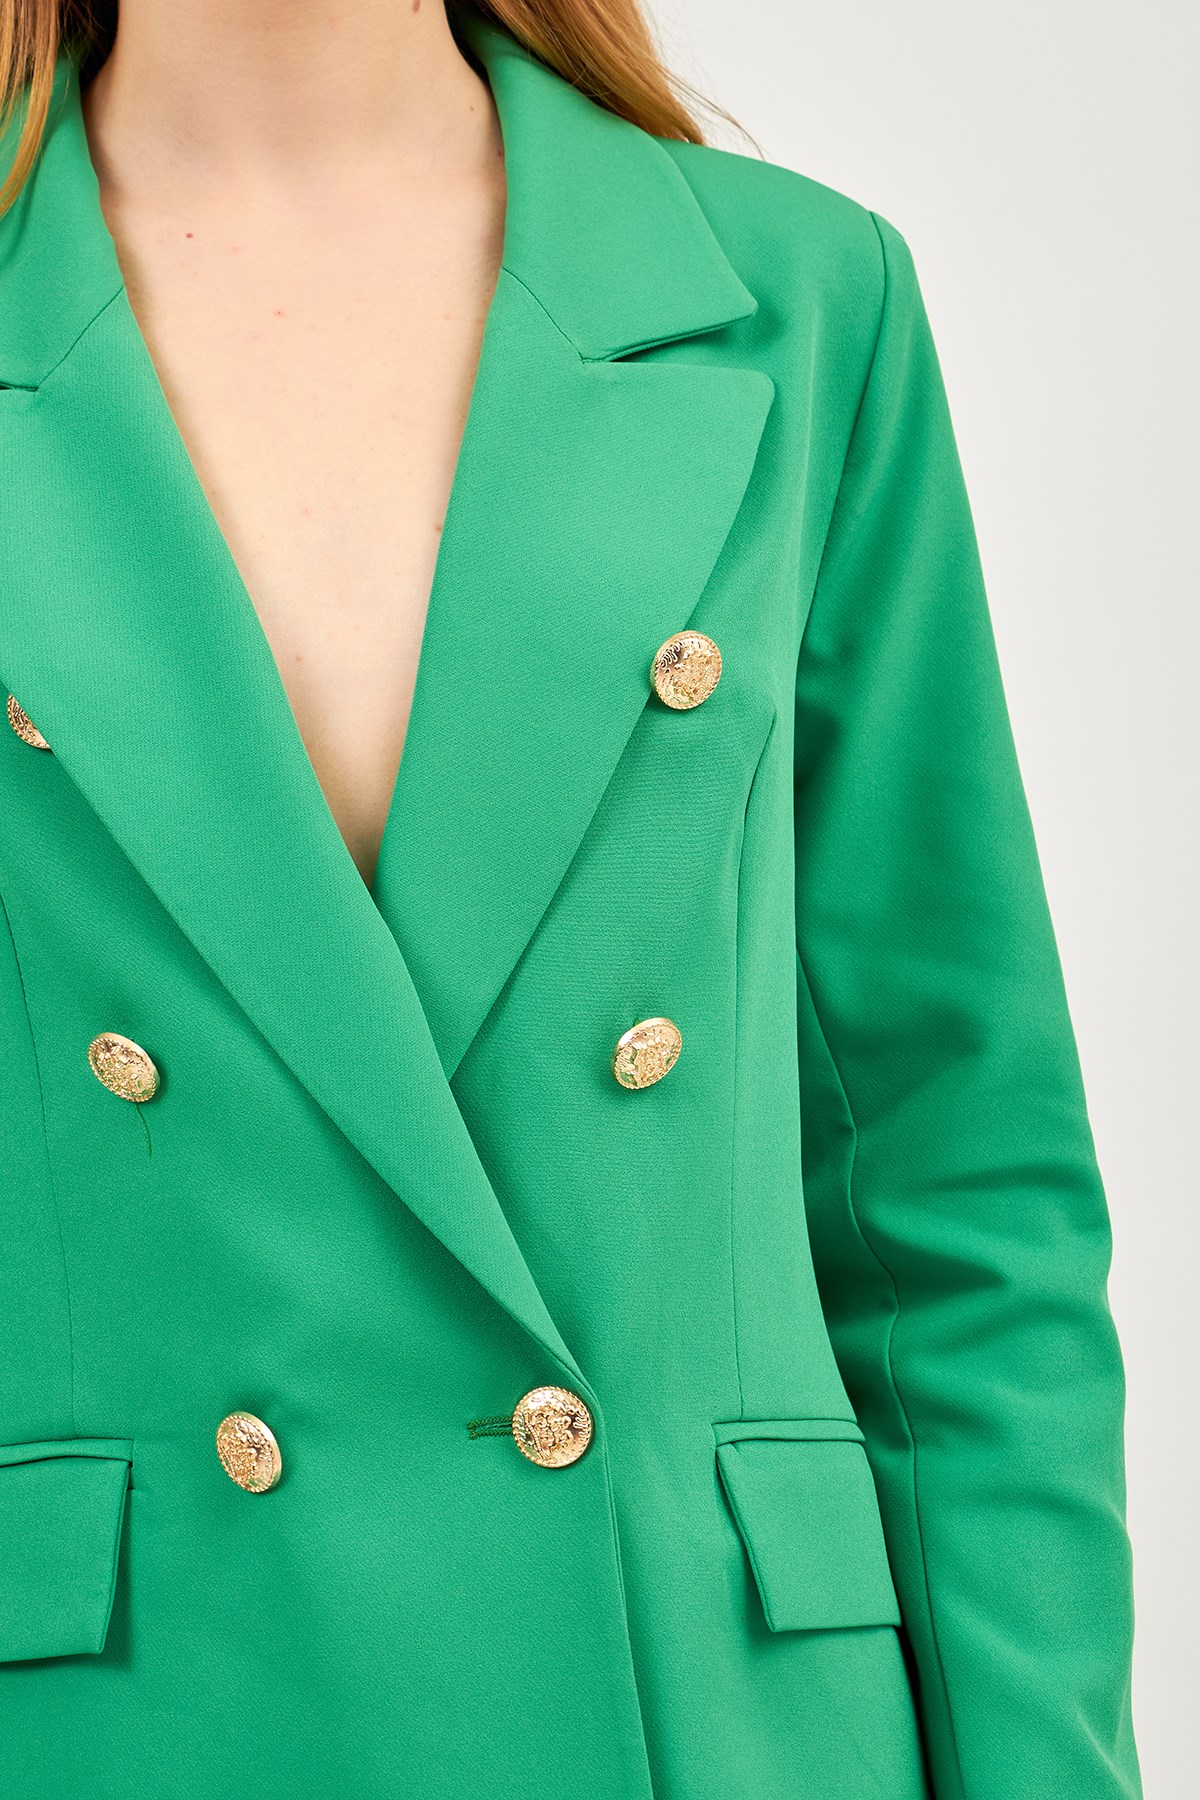 Kadın Benetton Yeşili Pantolon Ceket Takım